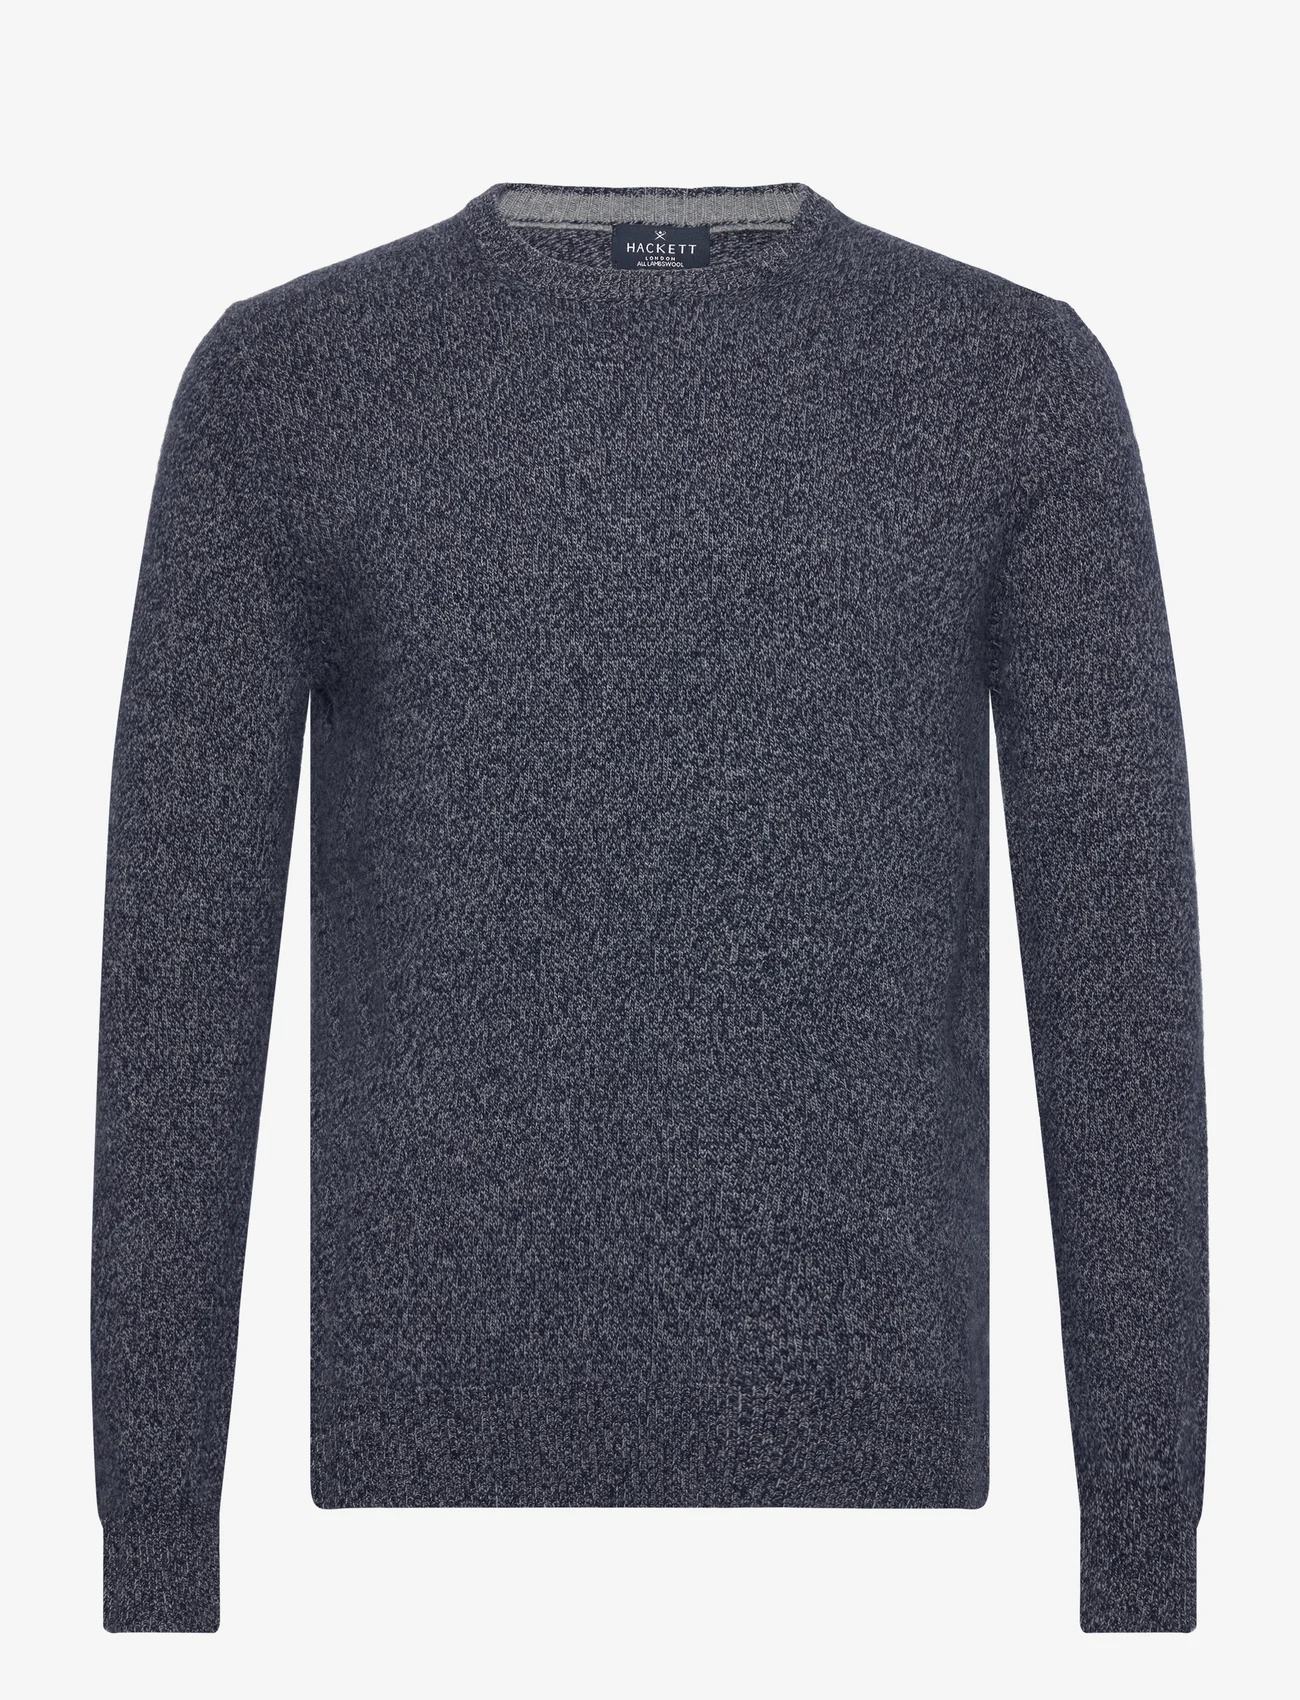 Hackett London - LW MOULINE CREW - knitted round necks - navy/grey - 0